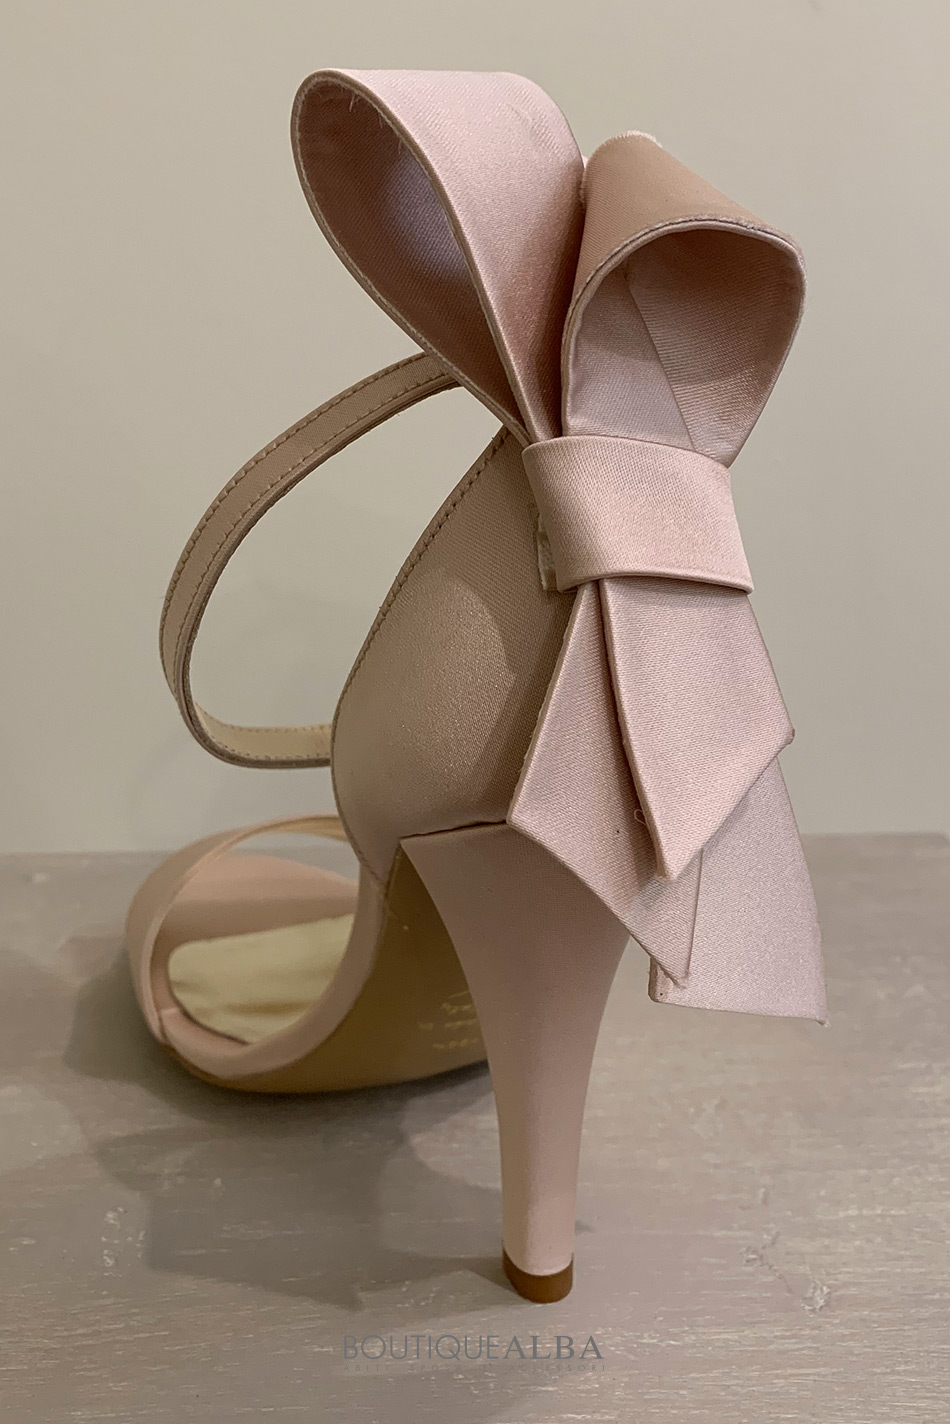 scarpe-sposa-boutique-alba-1016-raso-cipria-1016-1483-T105-76210-C